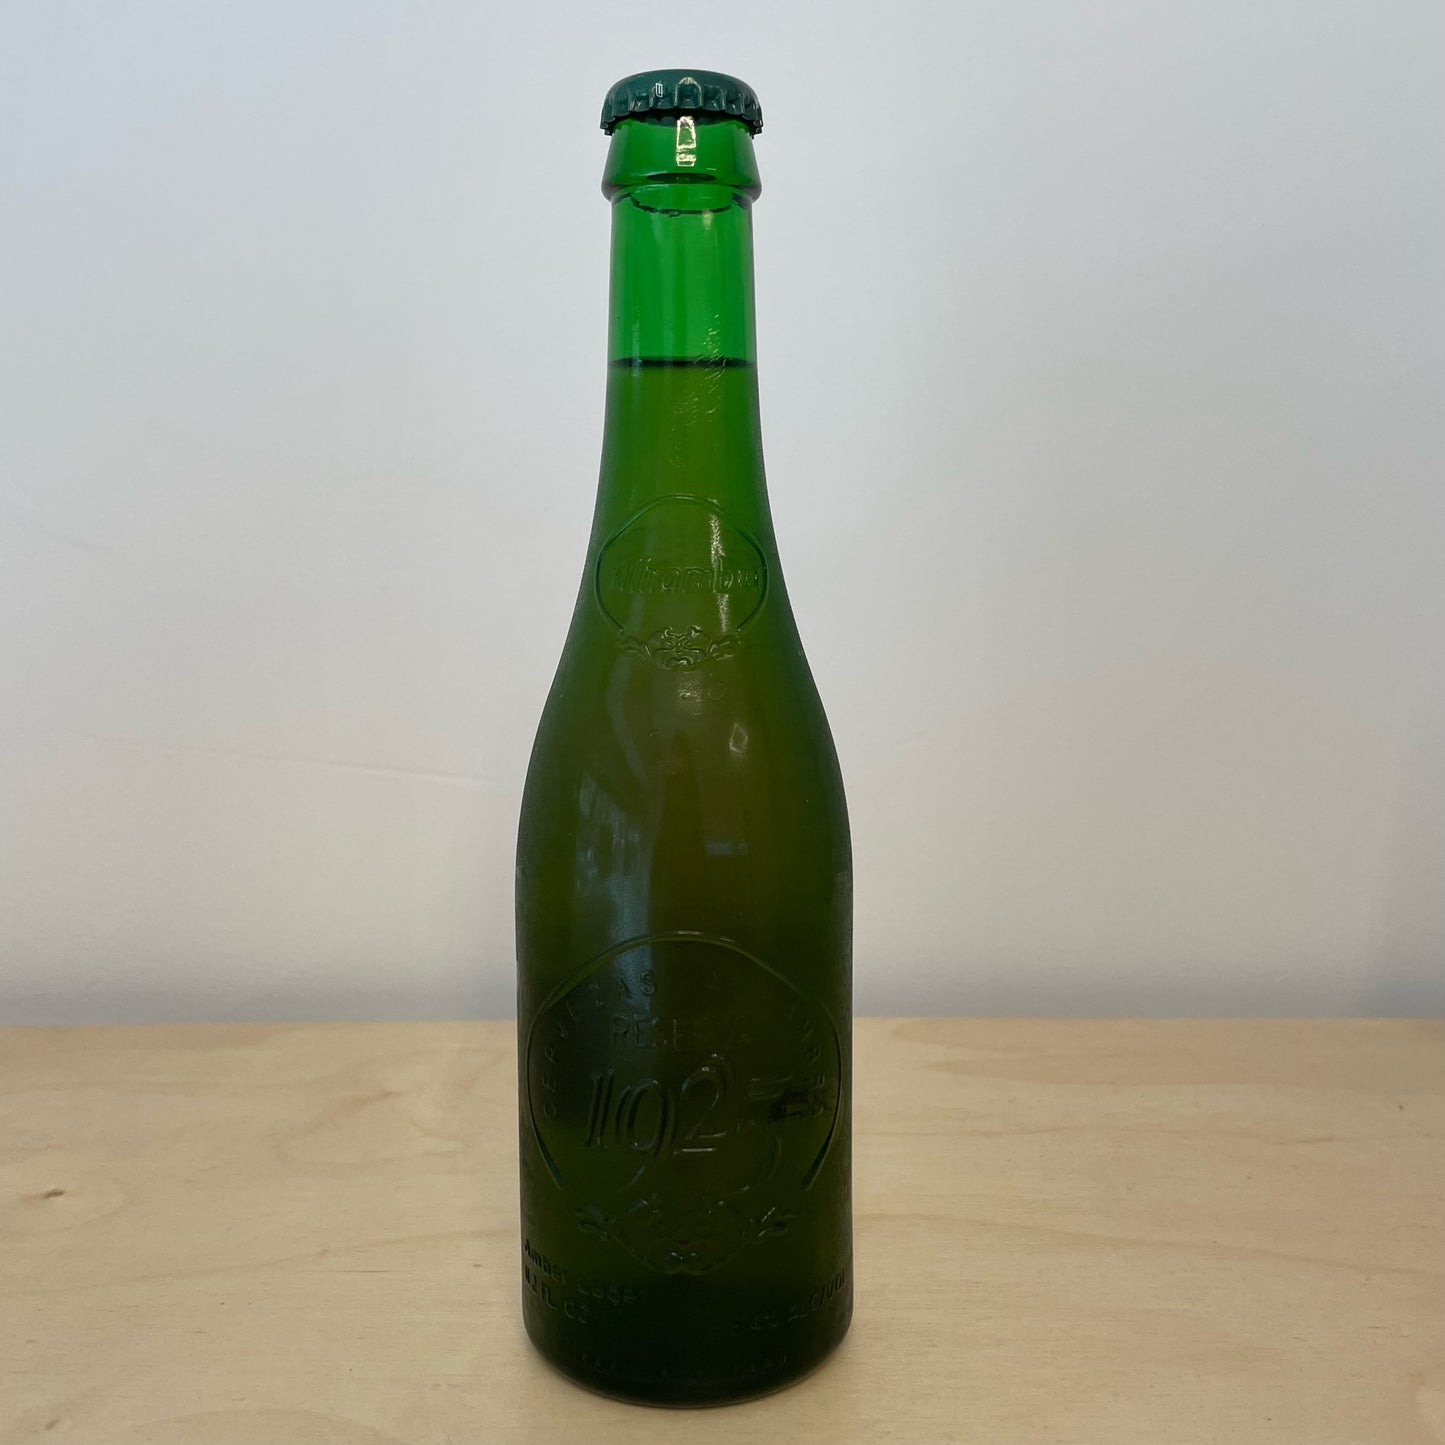 Alhambra Reserva 1925 (330ml Bottle)